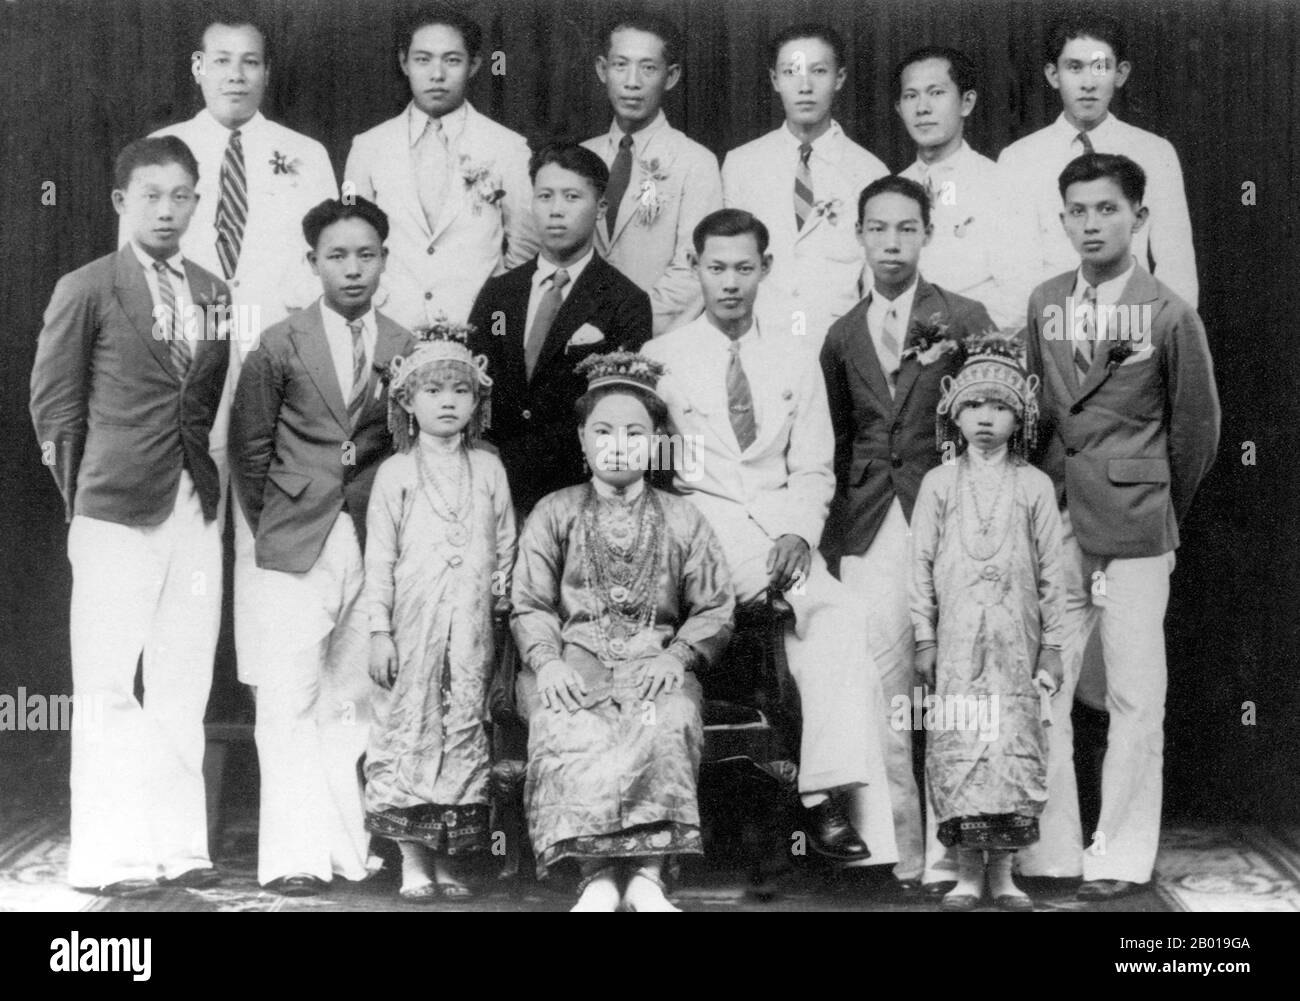 Tailandia: Un grupo de prósperos ciudadanos de Phuket en 1942. El vestido  de la mujer y dos niñas pequeñas indican que son de etnia china 'Phuket  Babes'. Phuket, antes conocido como Talang